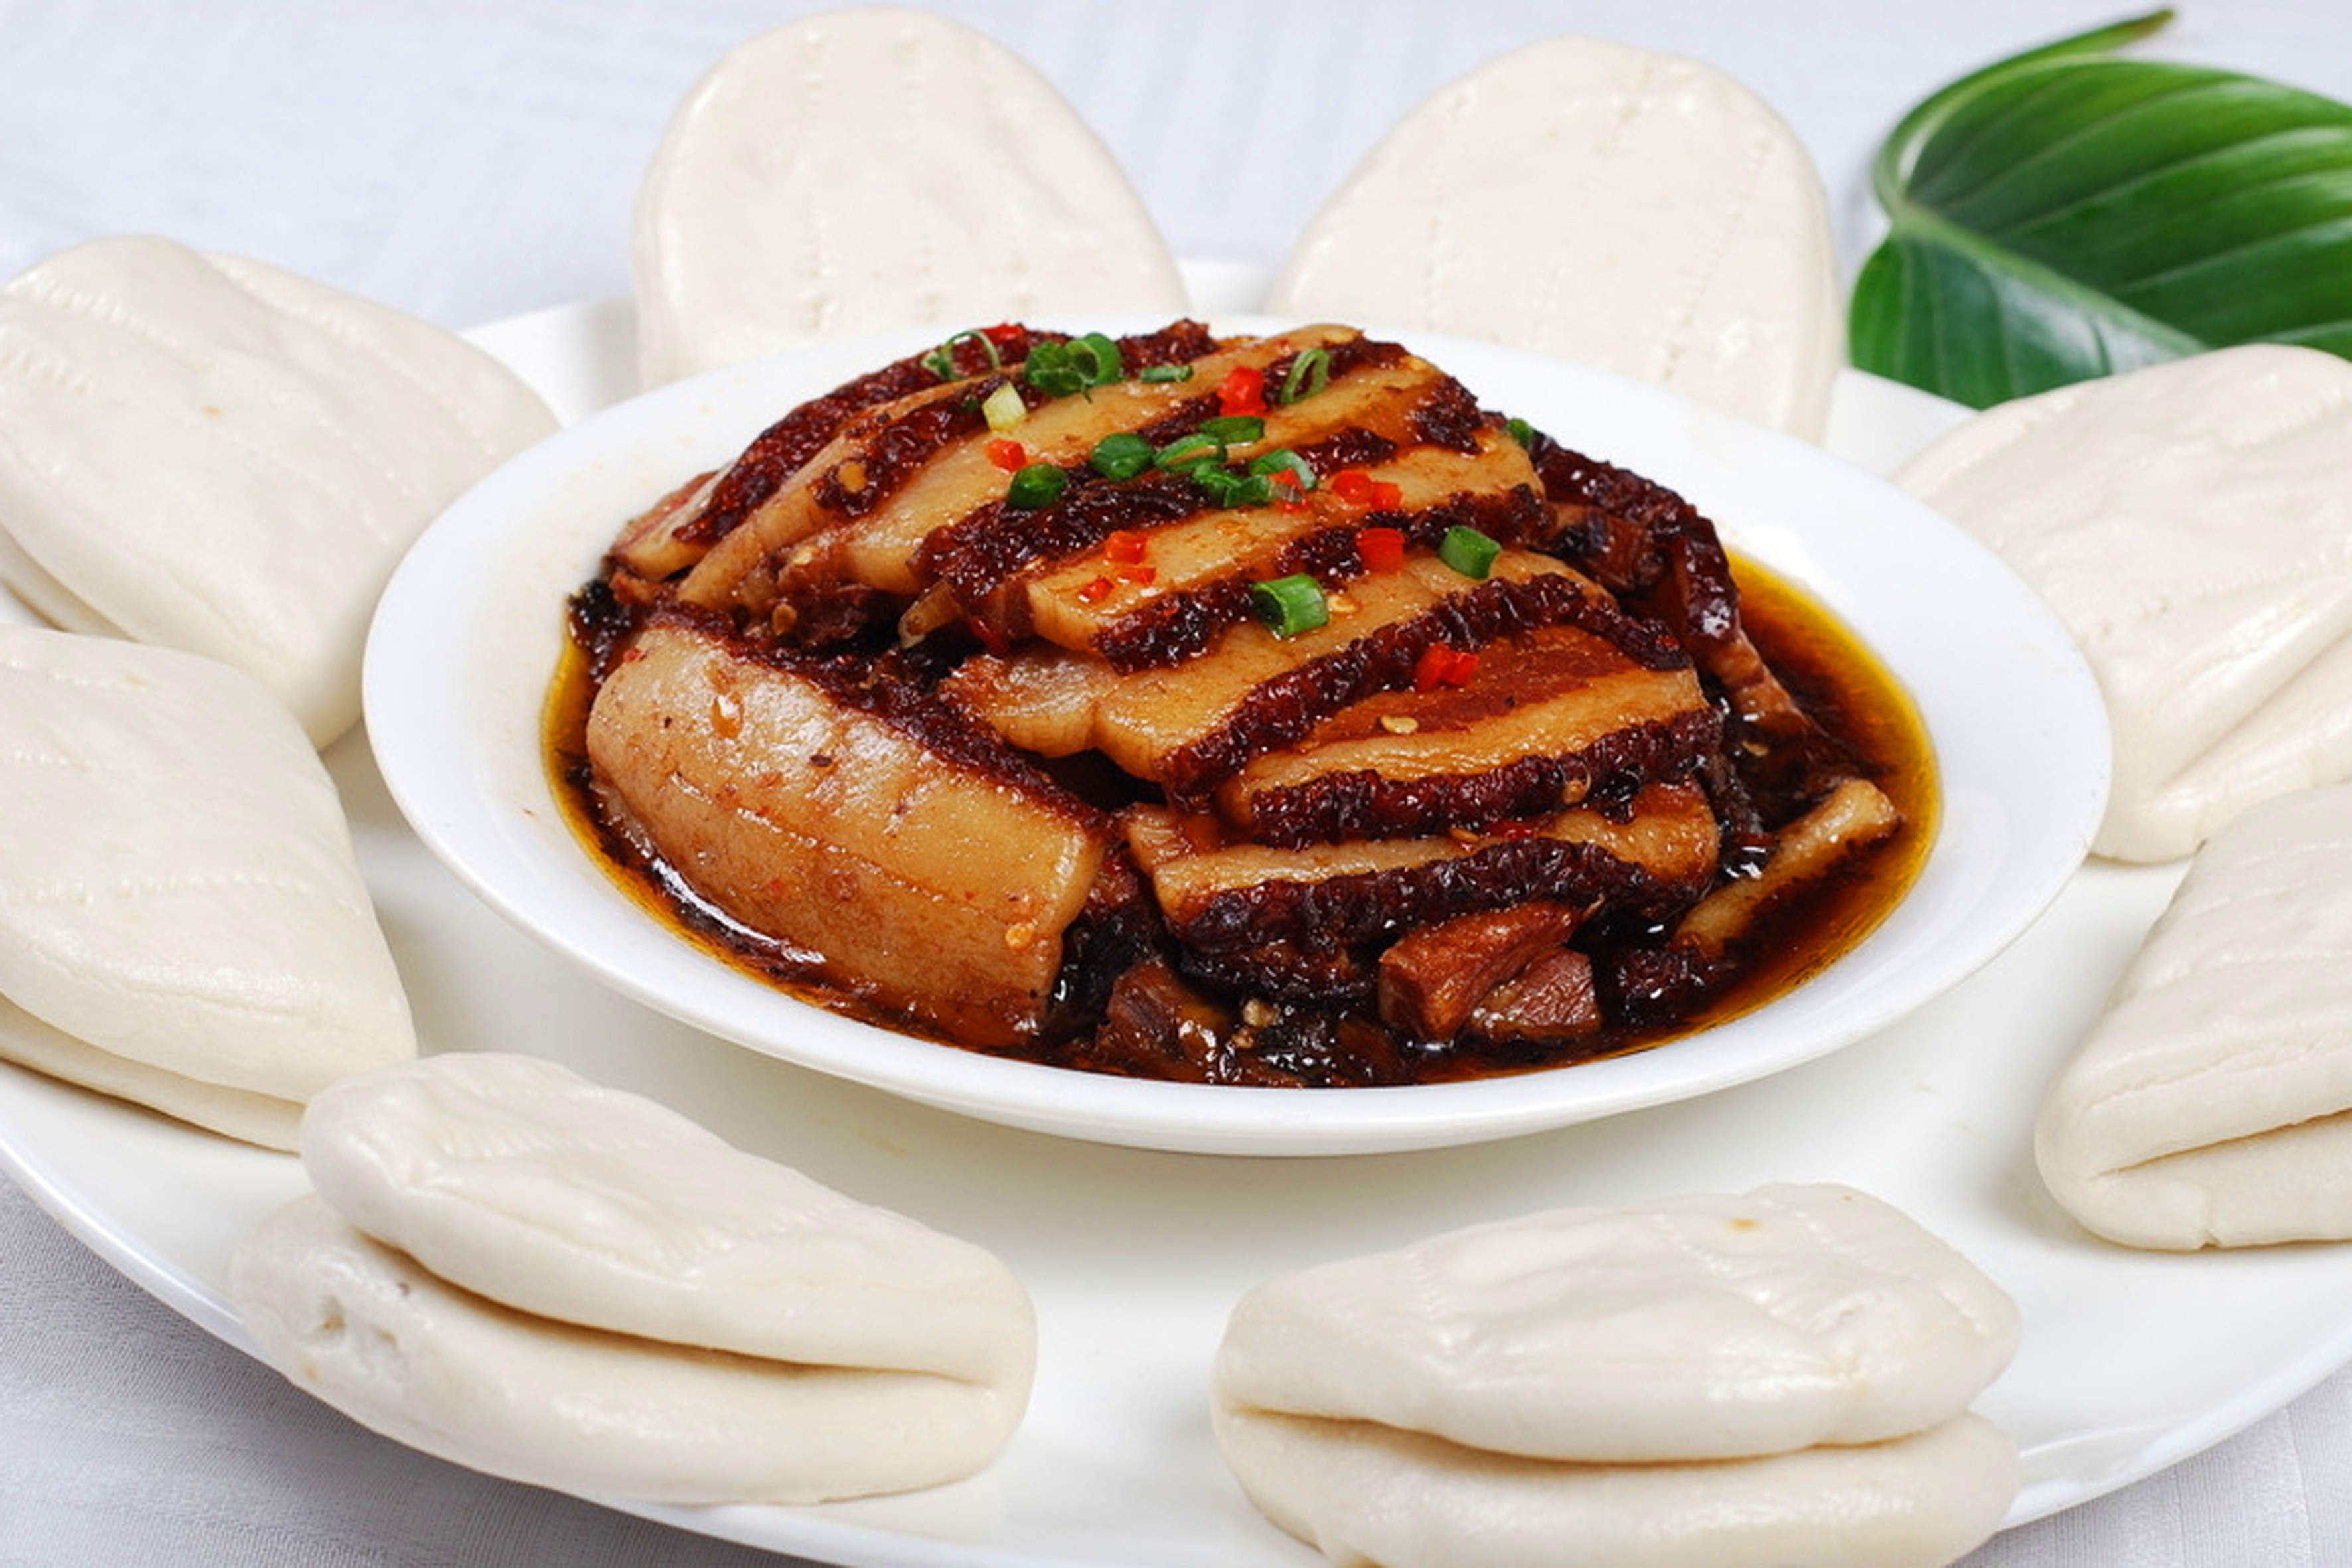 梅菜扣肉:梅菜扣肉汉族传统名菜,属客家菜